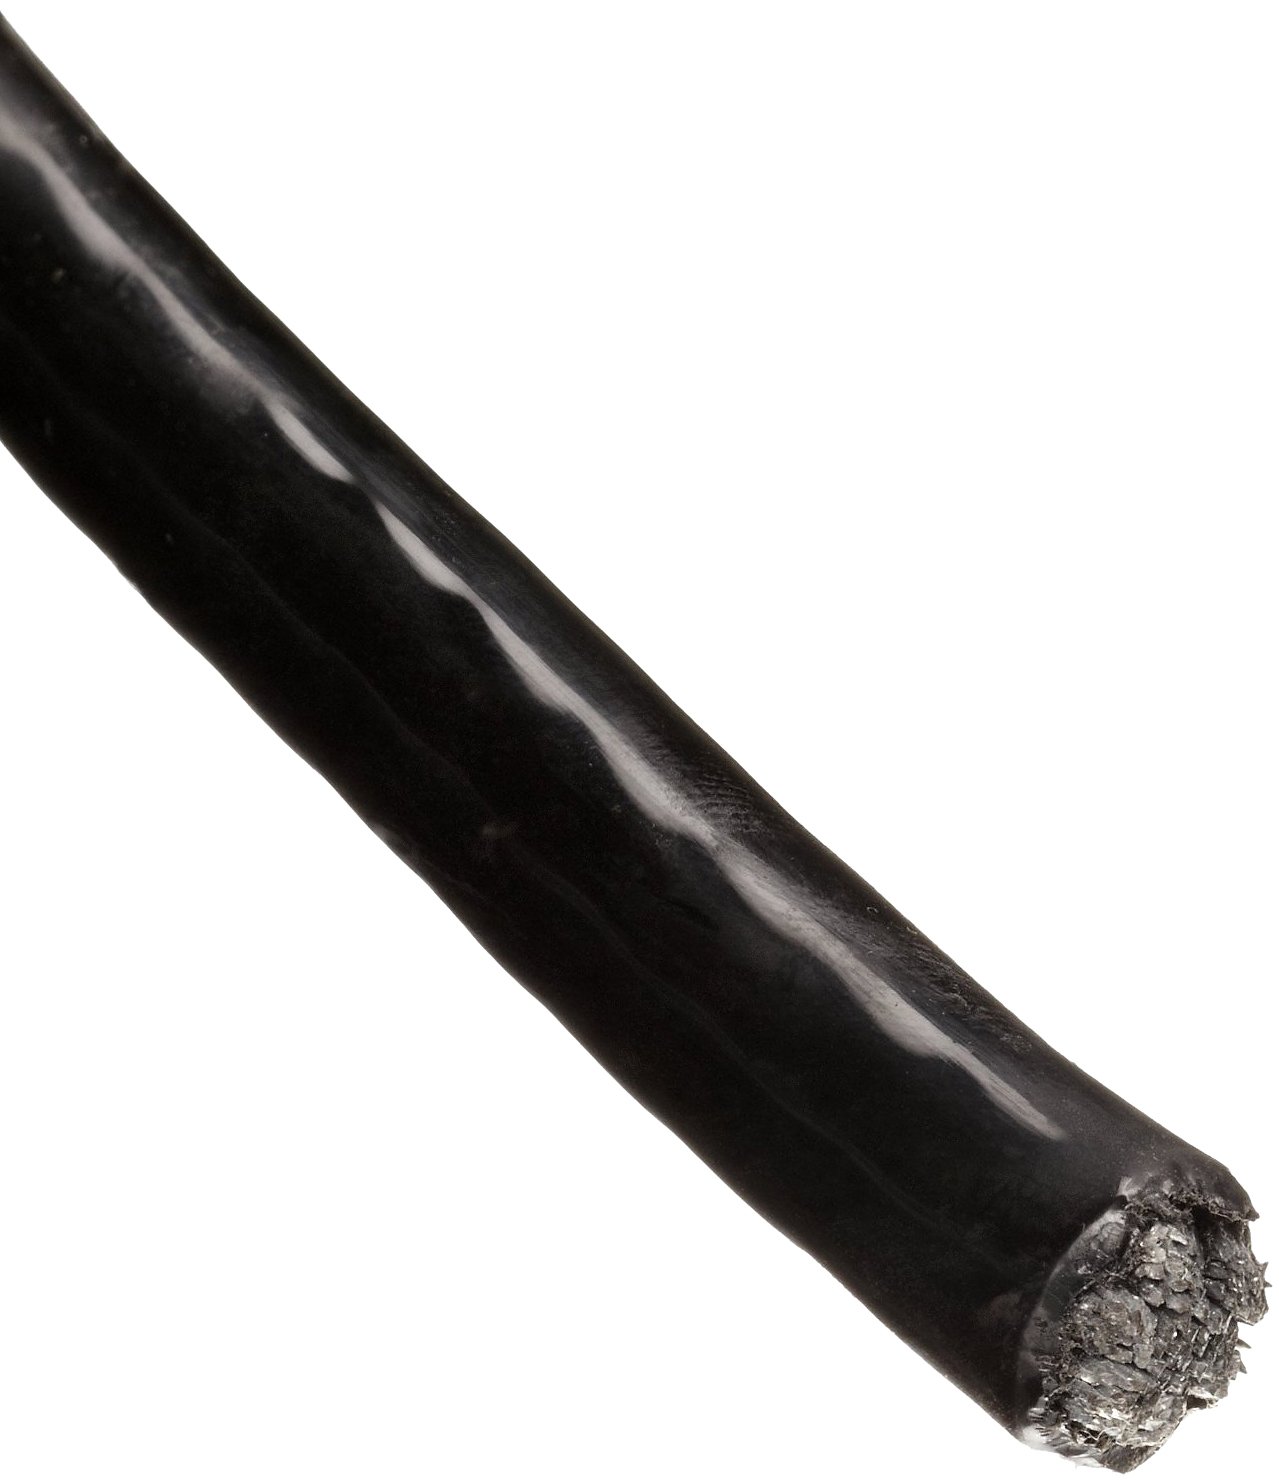 Трос в ПВХ оболочке 2 мм непрозрачный черный - фото